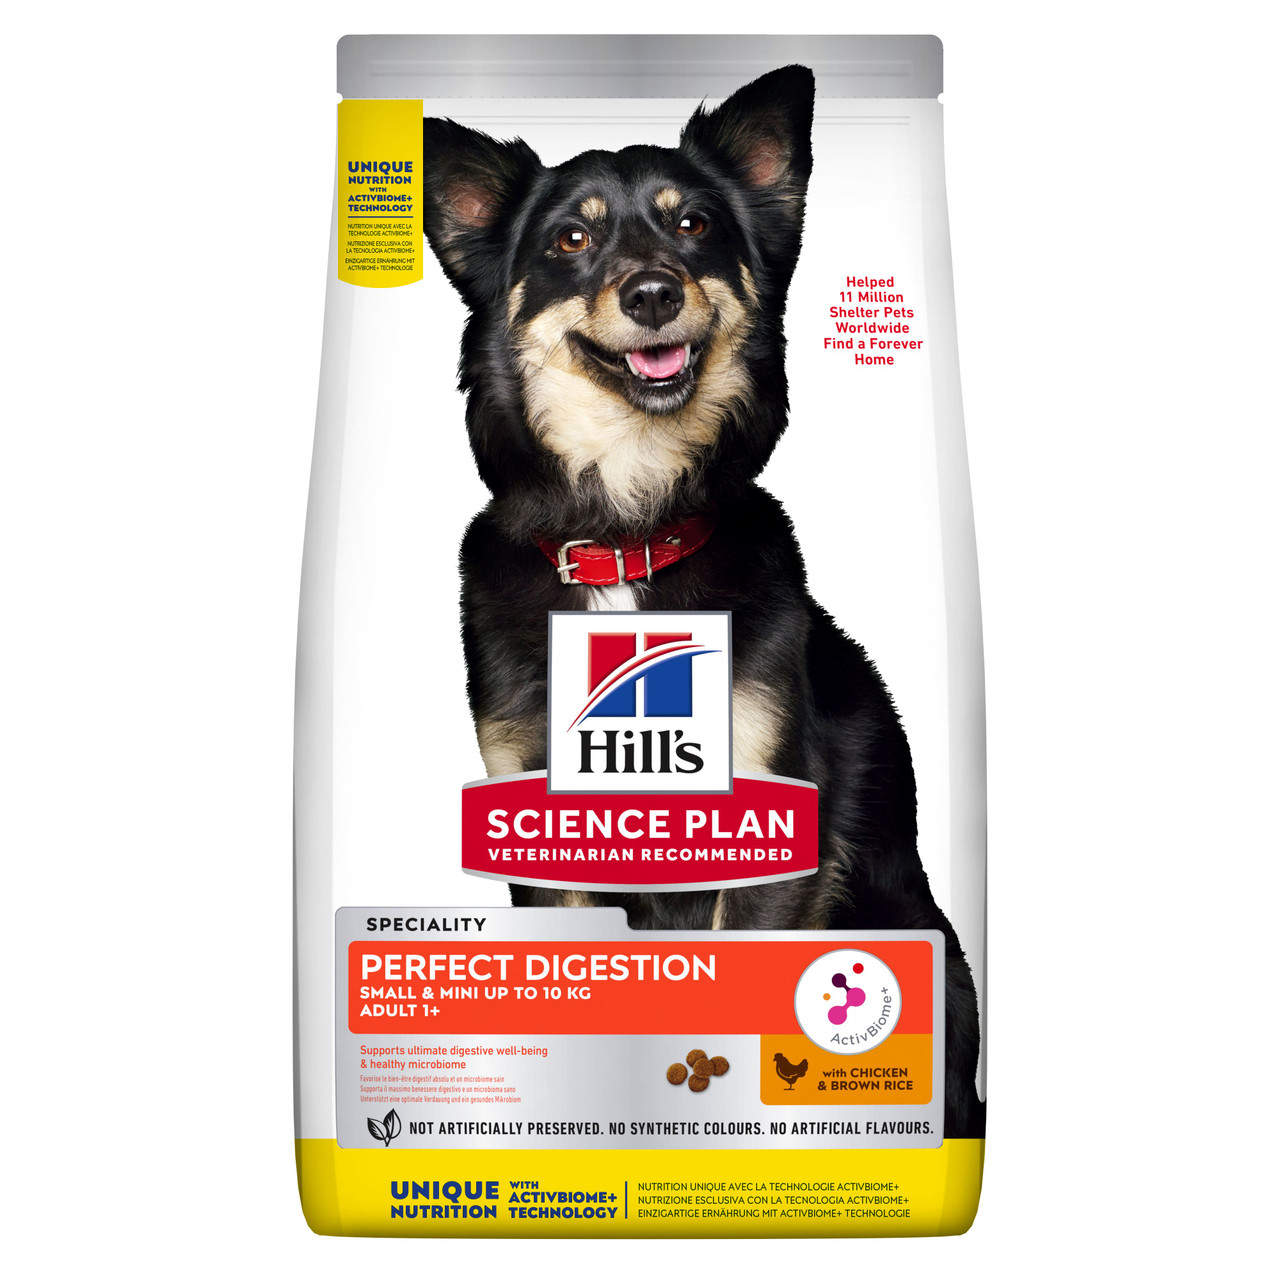 Perfect Digestion Small & Mini Adult Hundfoder – 3 kg